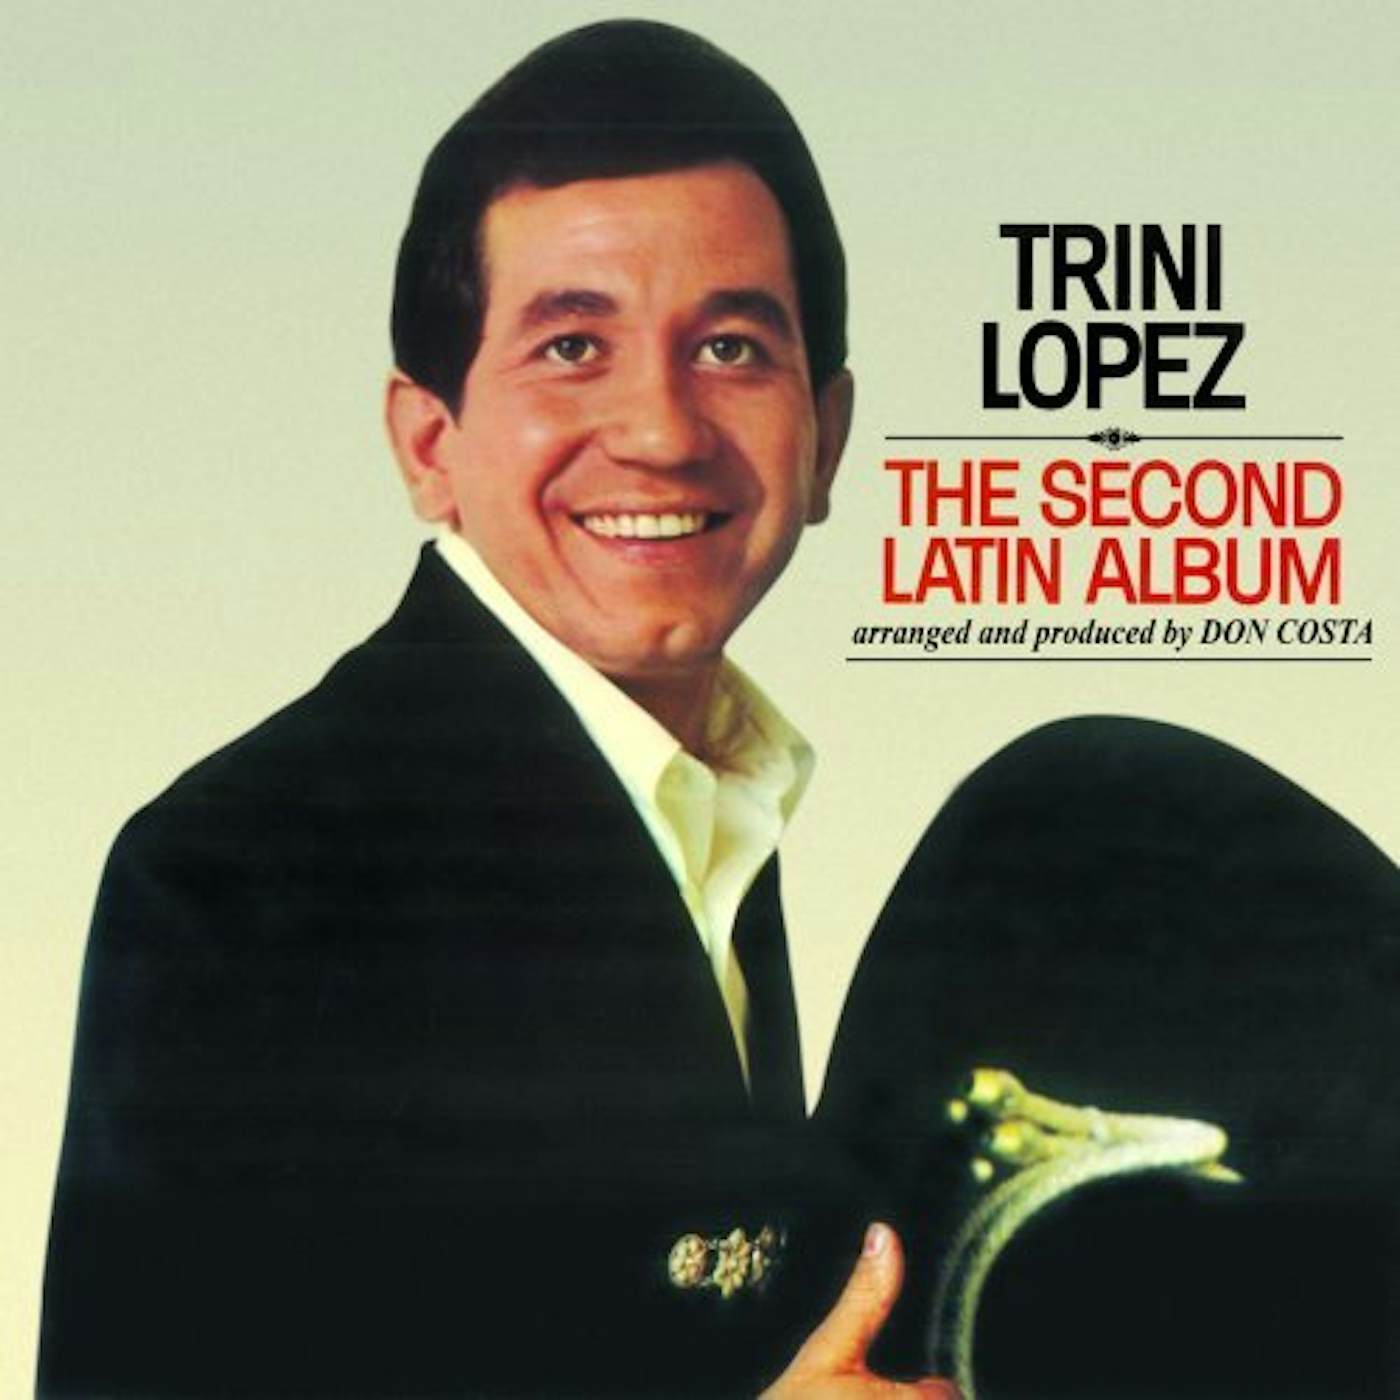 Trini Lopez SECOND LATIN ALBUM CD